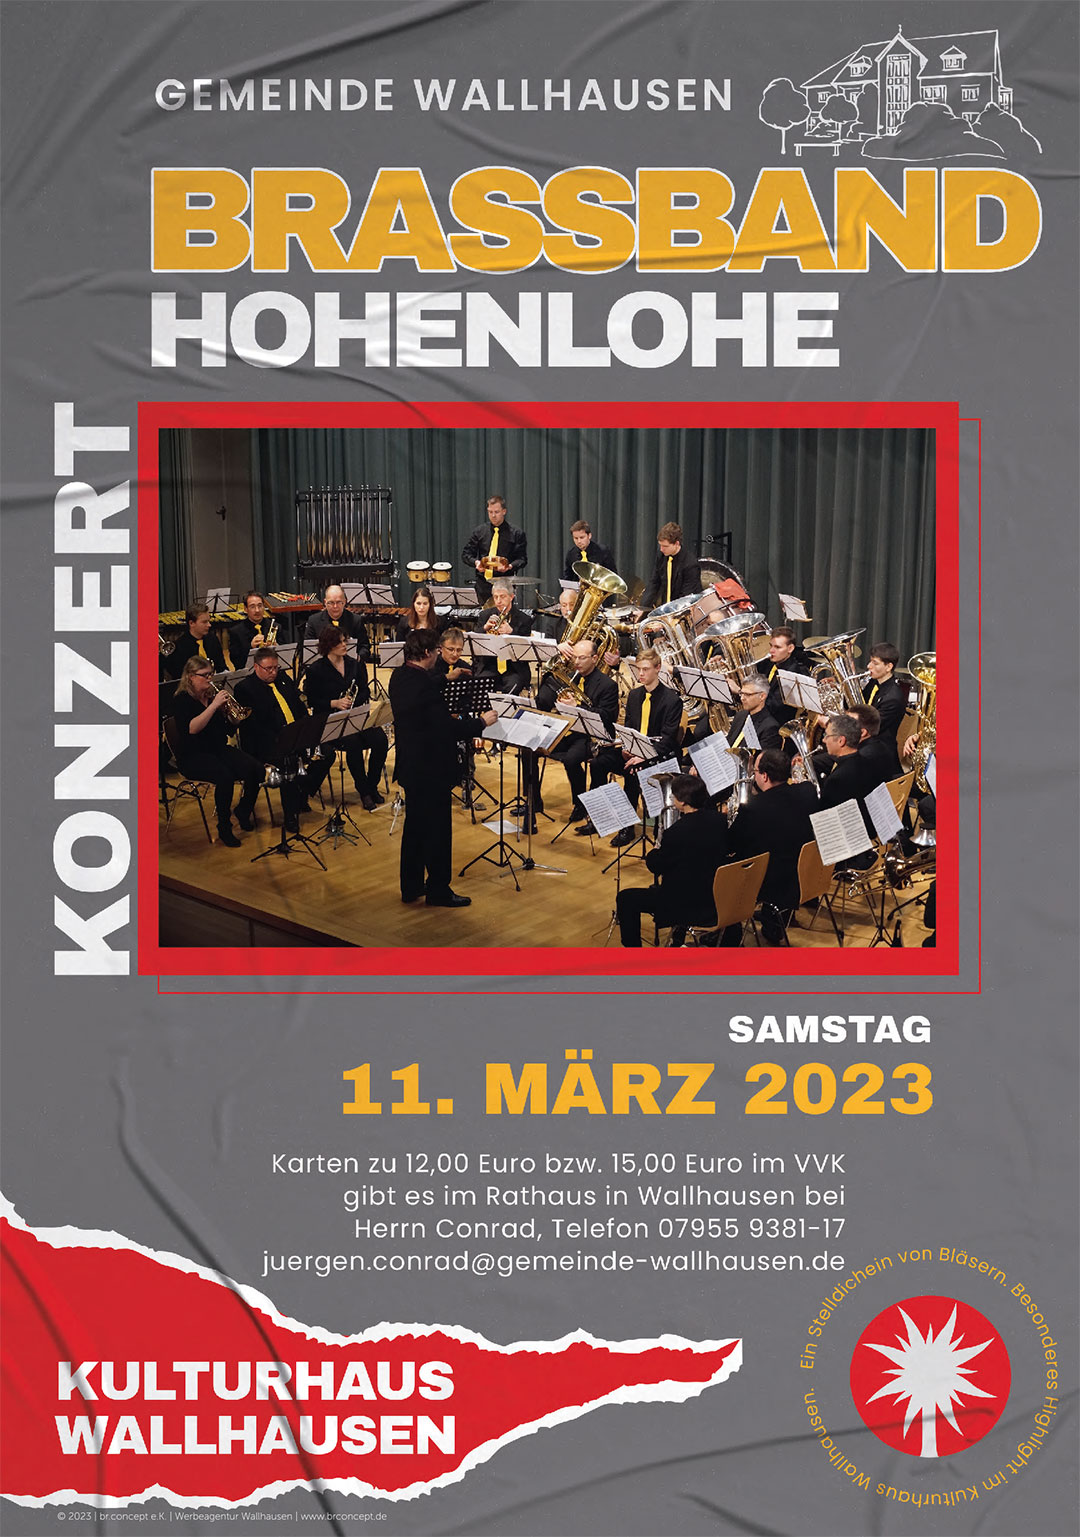 Konzert: Brassband Hohnelohe - Kulturhaus Wallhausen - Samstag, 11. März 2023